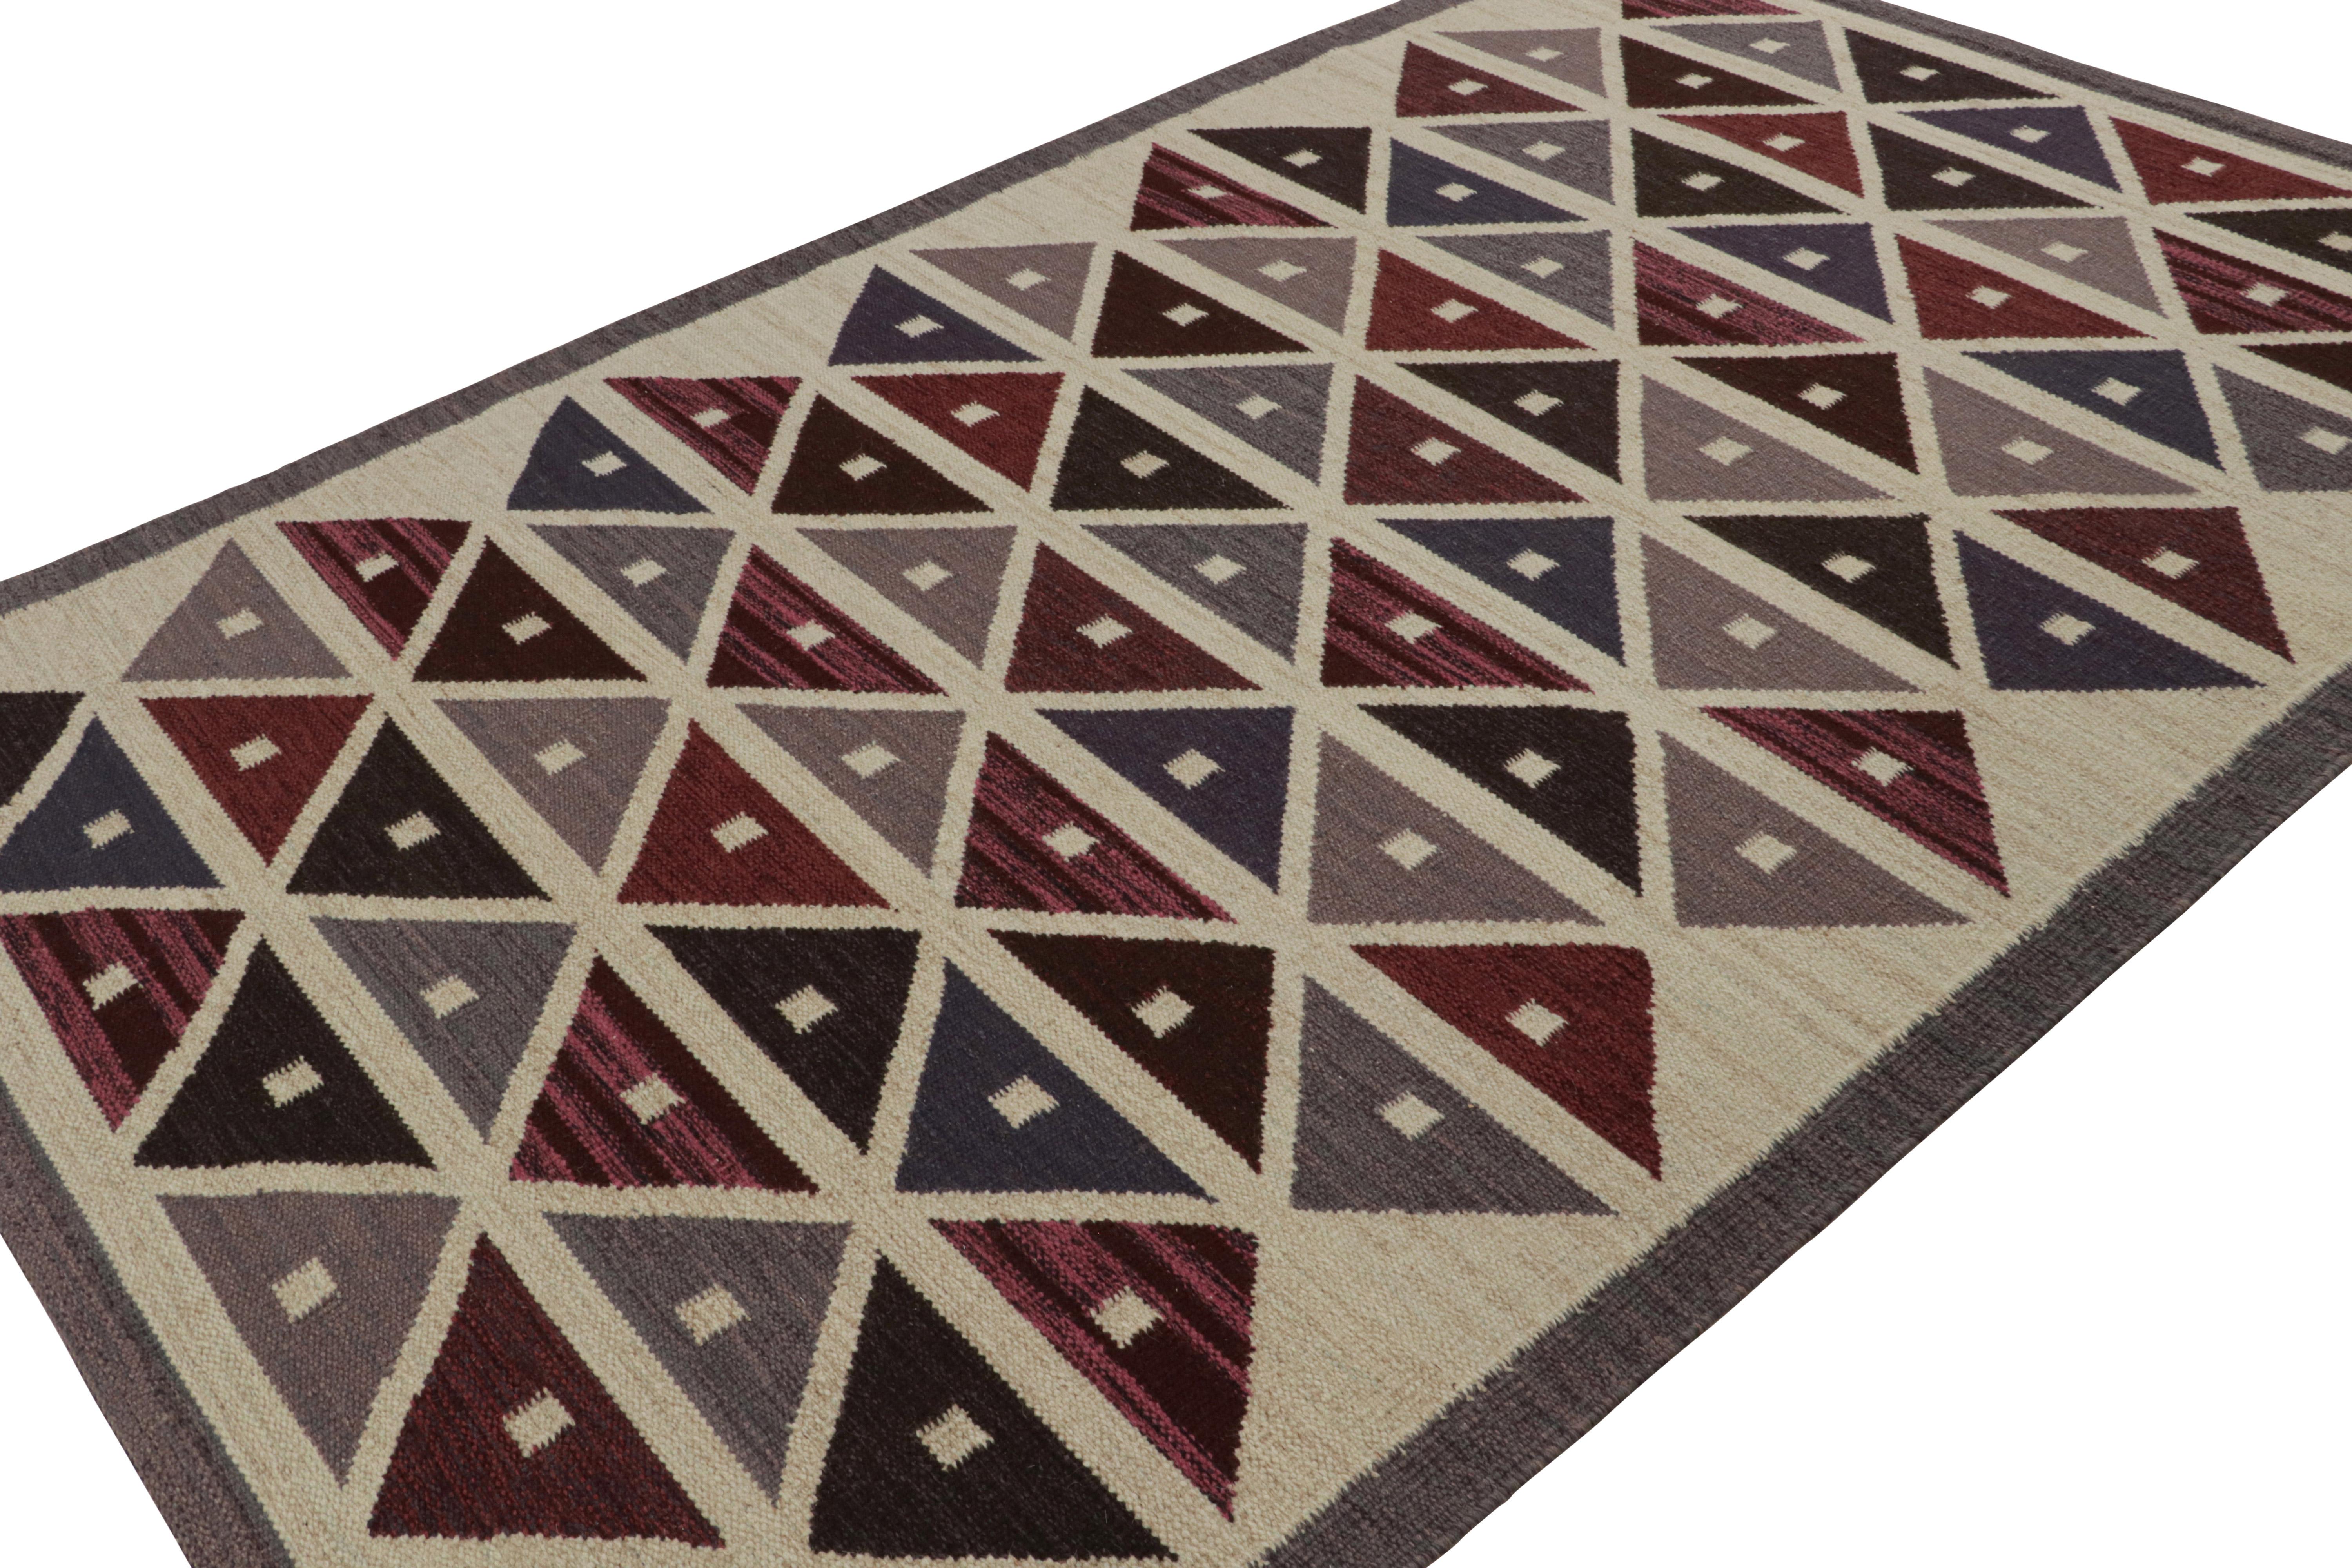 Dieser 6x10 Kilim-Teppich ist aus der Flachgewebe-Linie der skandinavischen Teppichkollektion von Rug & Kilim. Das aus Wolle, Baumwolle und natürlichen Garnen handgewebte Design ist eine moderne Interpretation der Rollakhan- und Rya-Teppiche im Stil